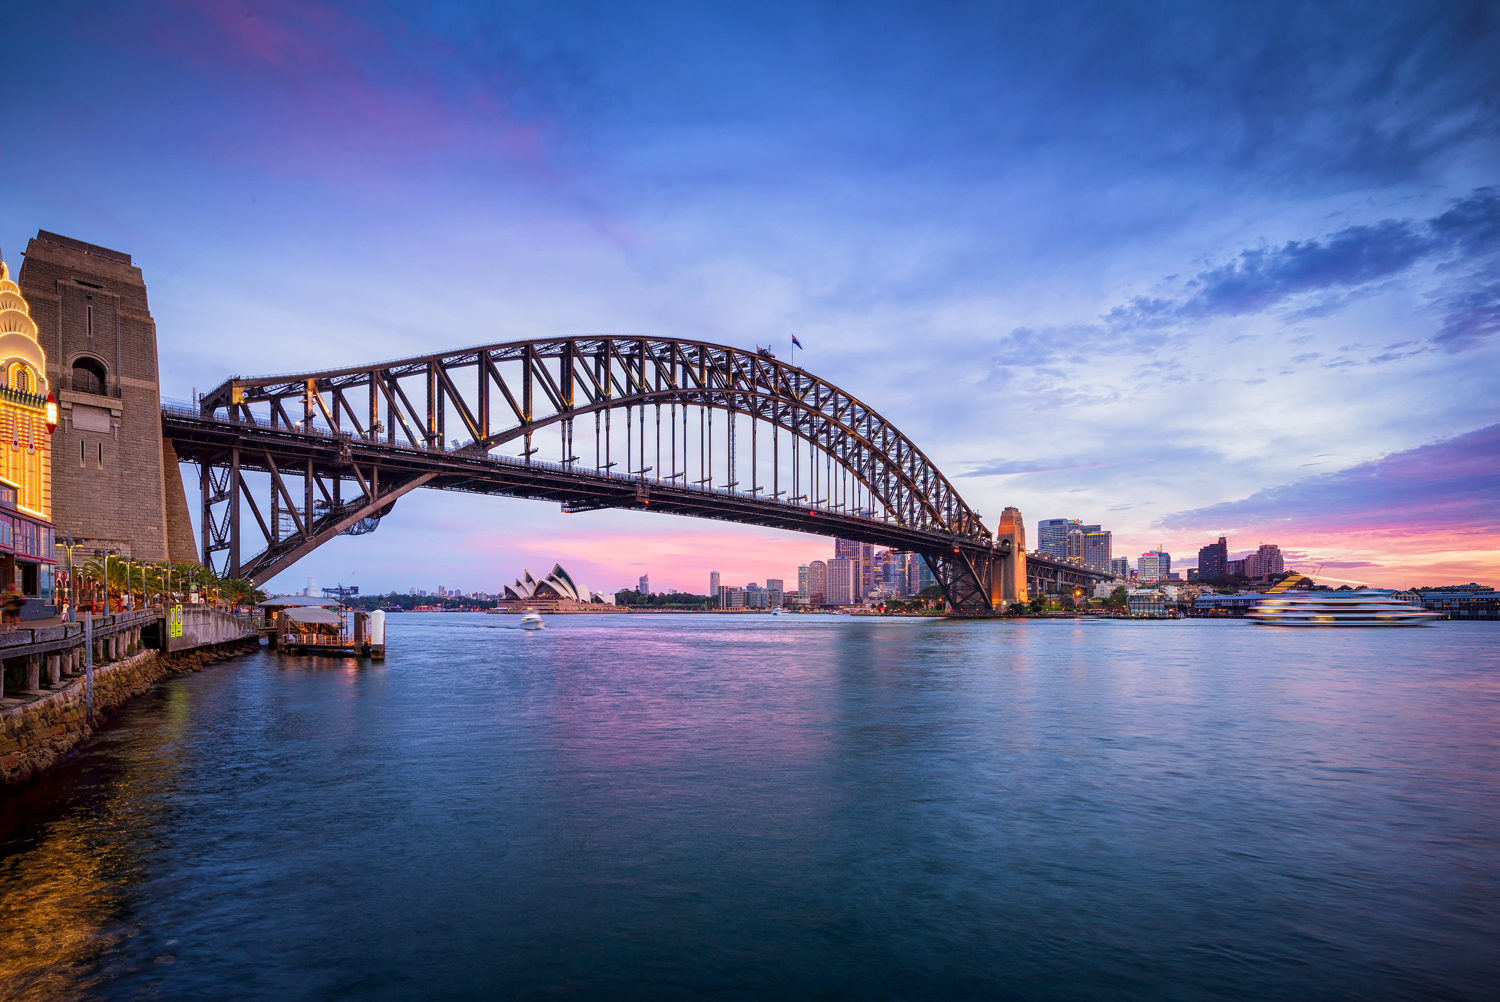 The Sydney Statement seeks to build bridges between believers of differnt religions.